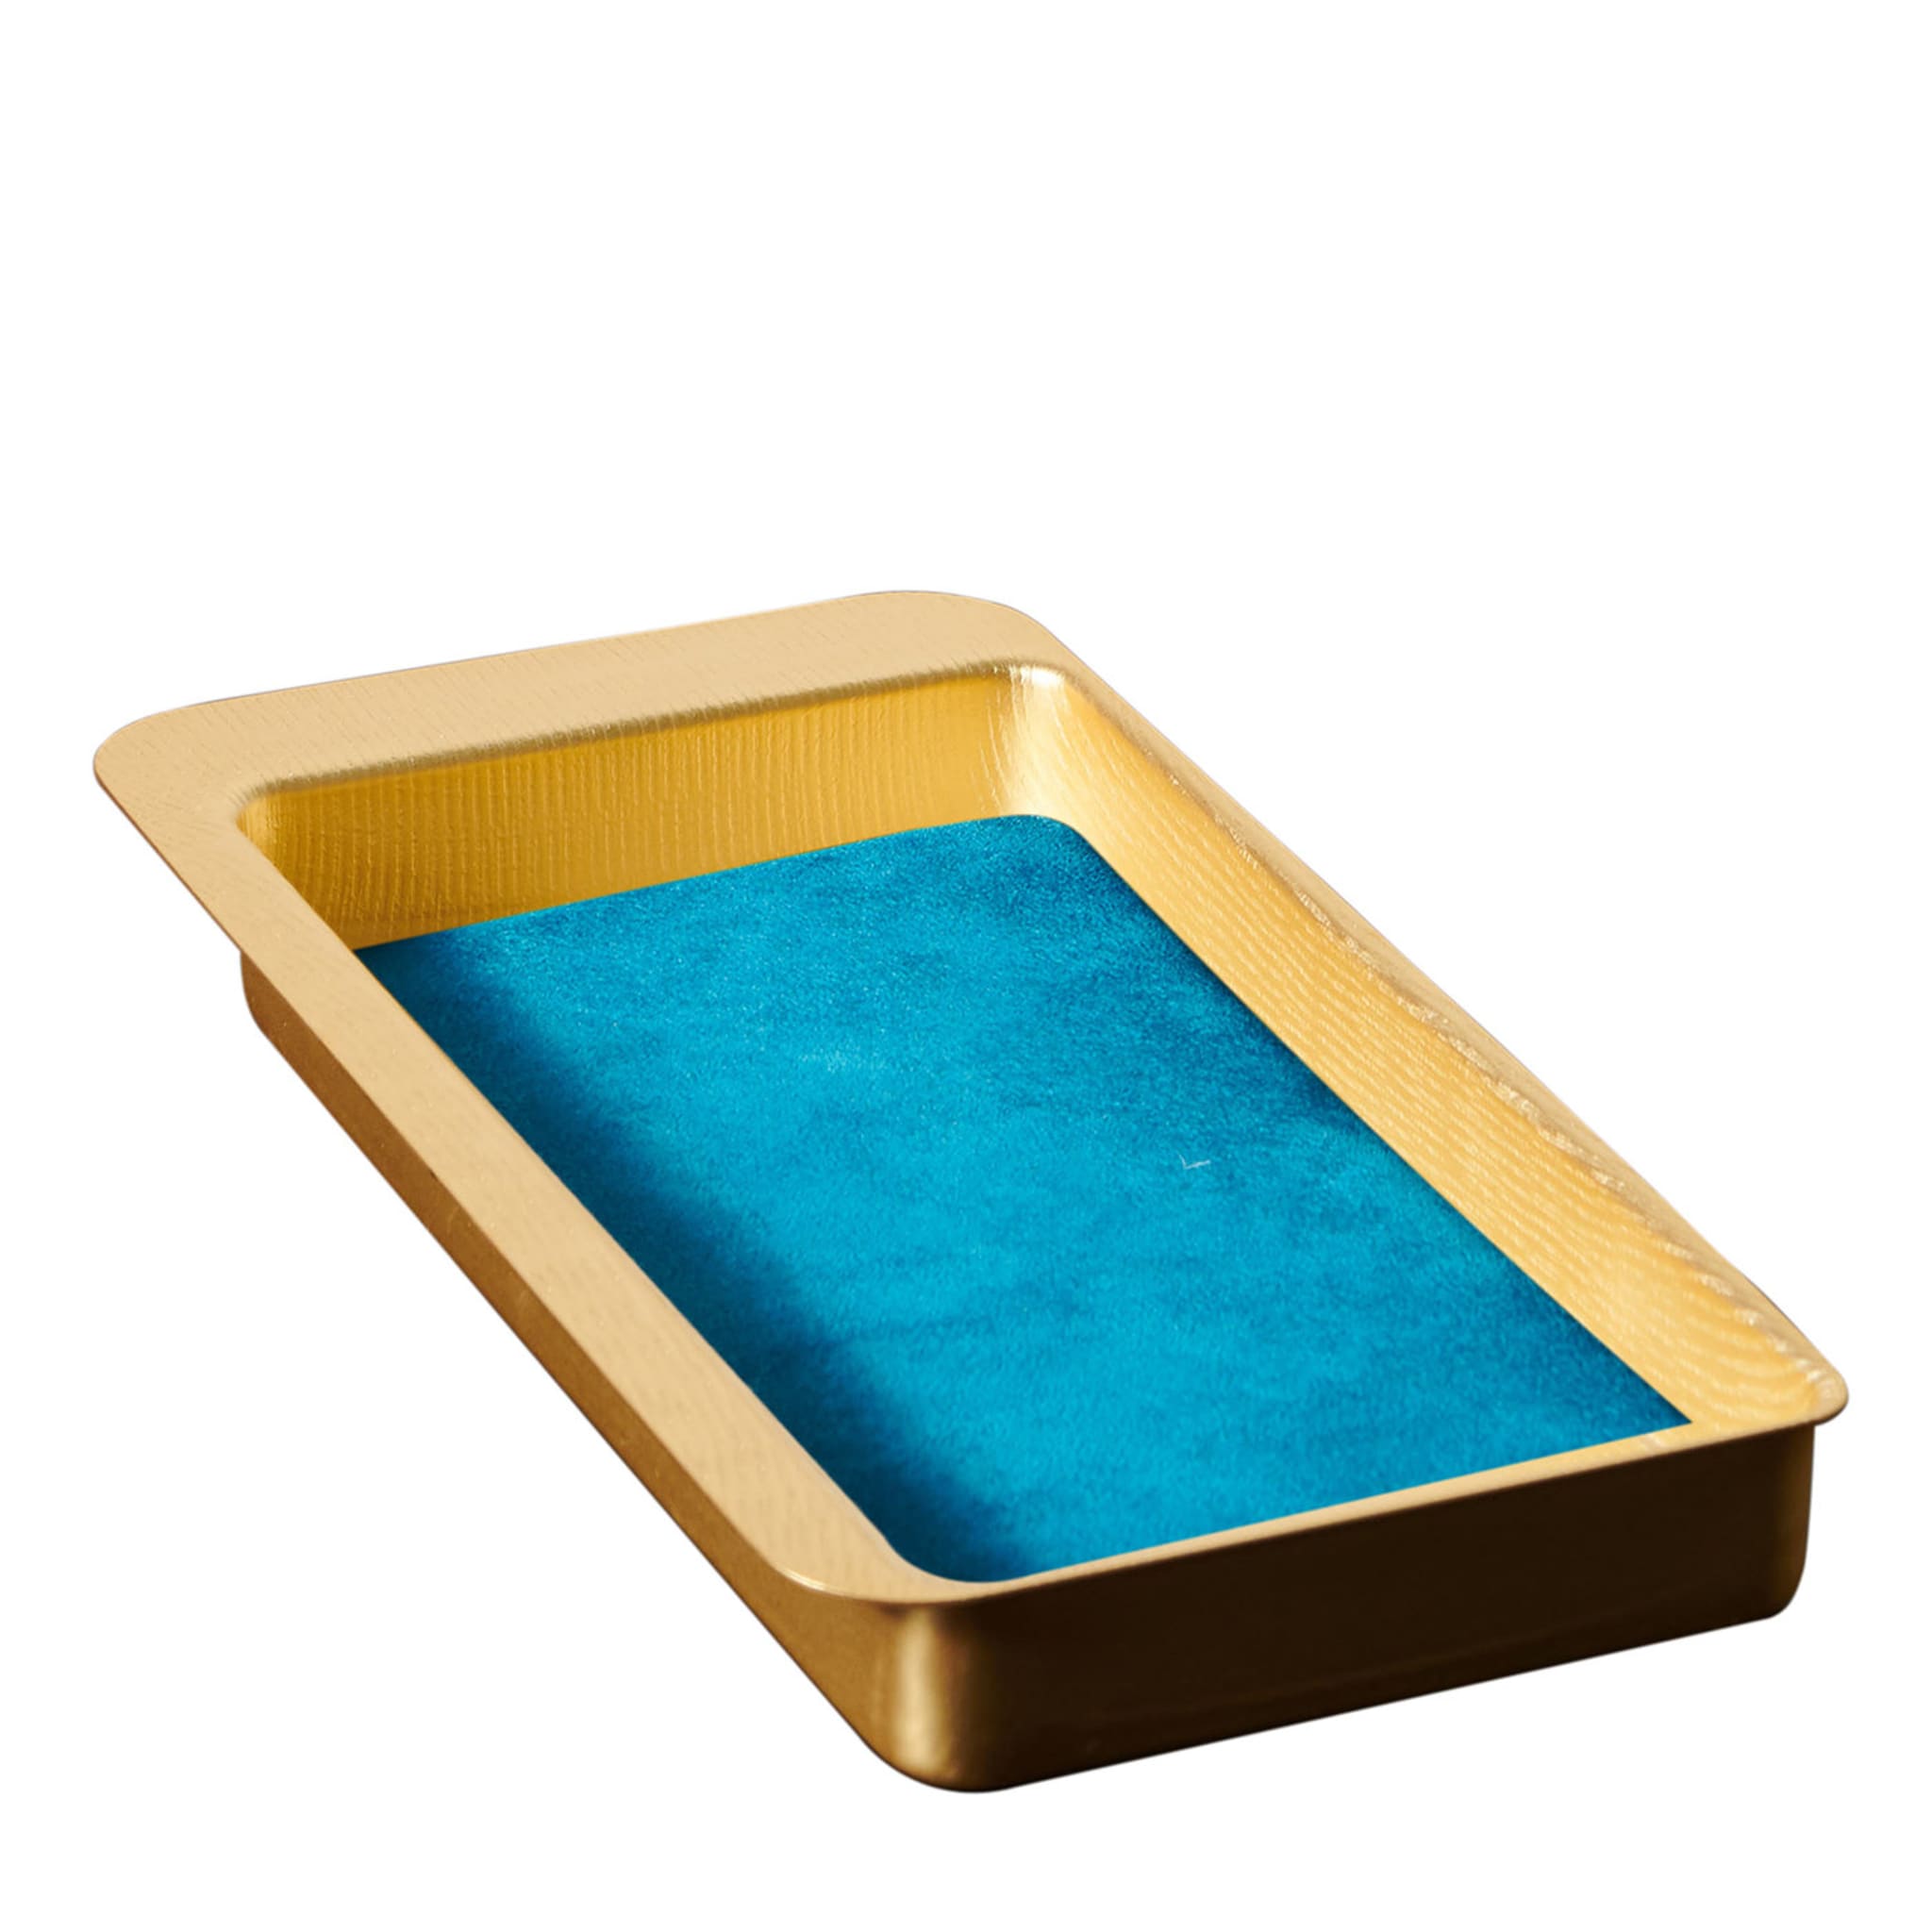 Firenze Vassoio rettangolare a tasca vuota oro e azzurro - Vista principale